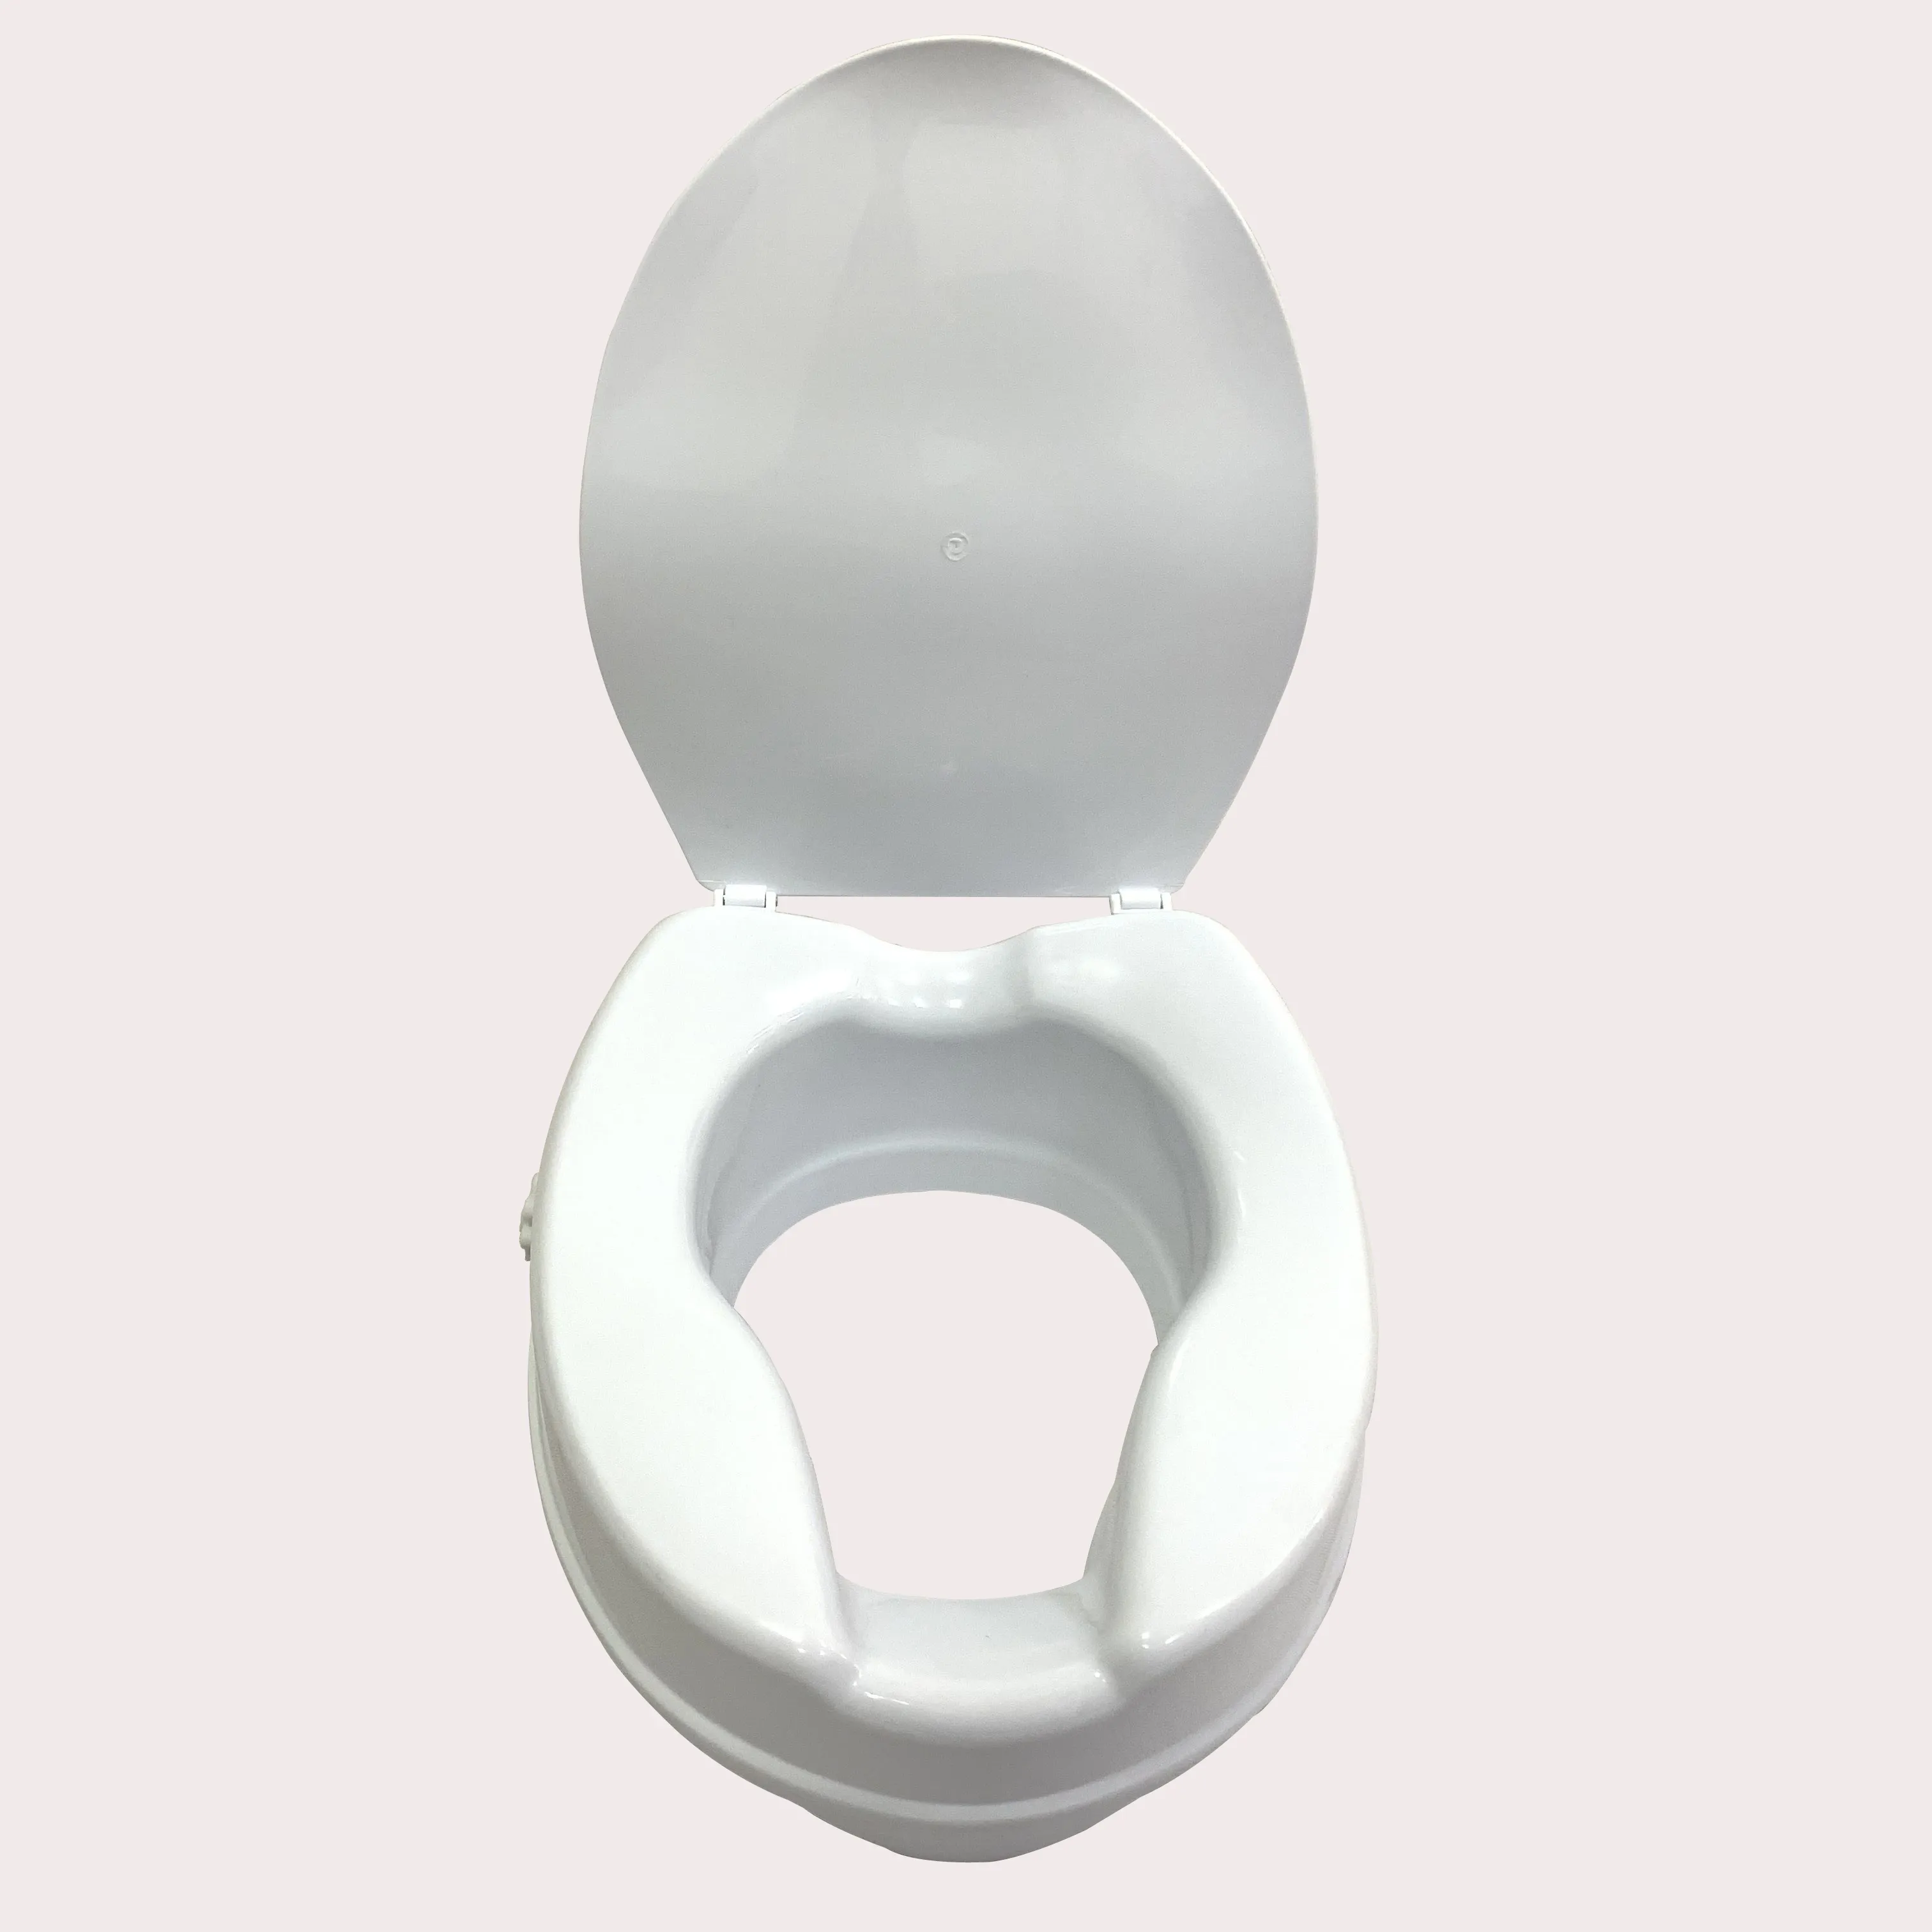 Assento do vaso sanitário elevado do plástico 4 polegadas com tampa branca para idosos